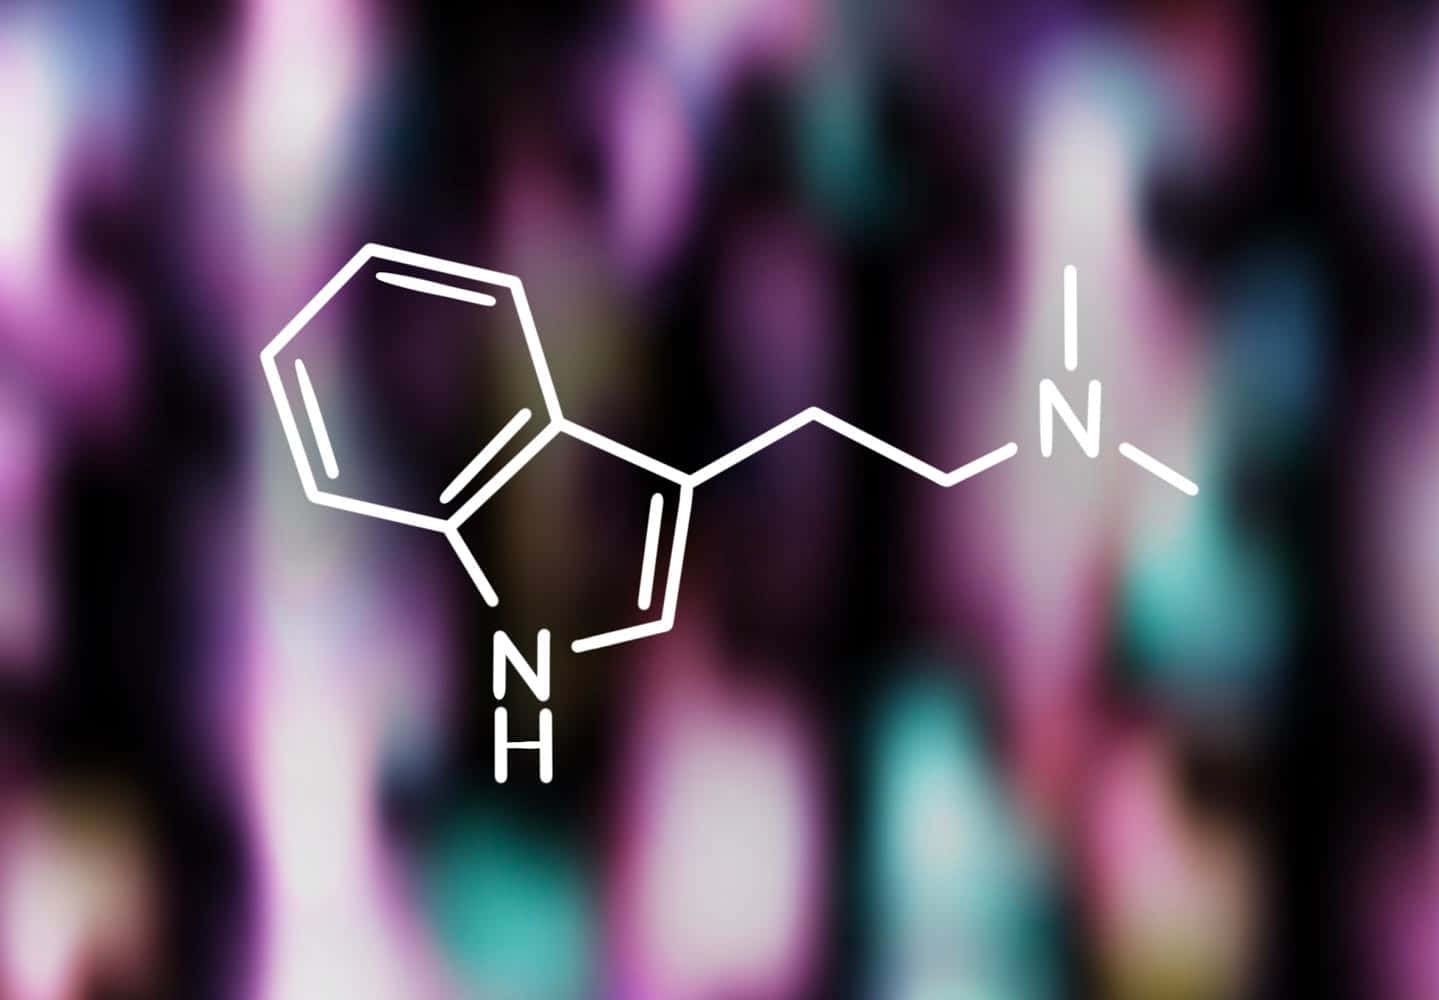 Enmolekyl Av Ett Läkemedel Visas På En Färgglad Bakgrund. Wallpaper